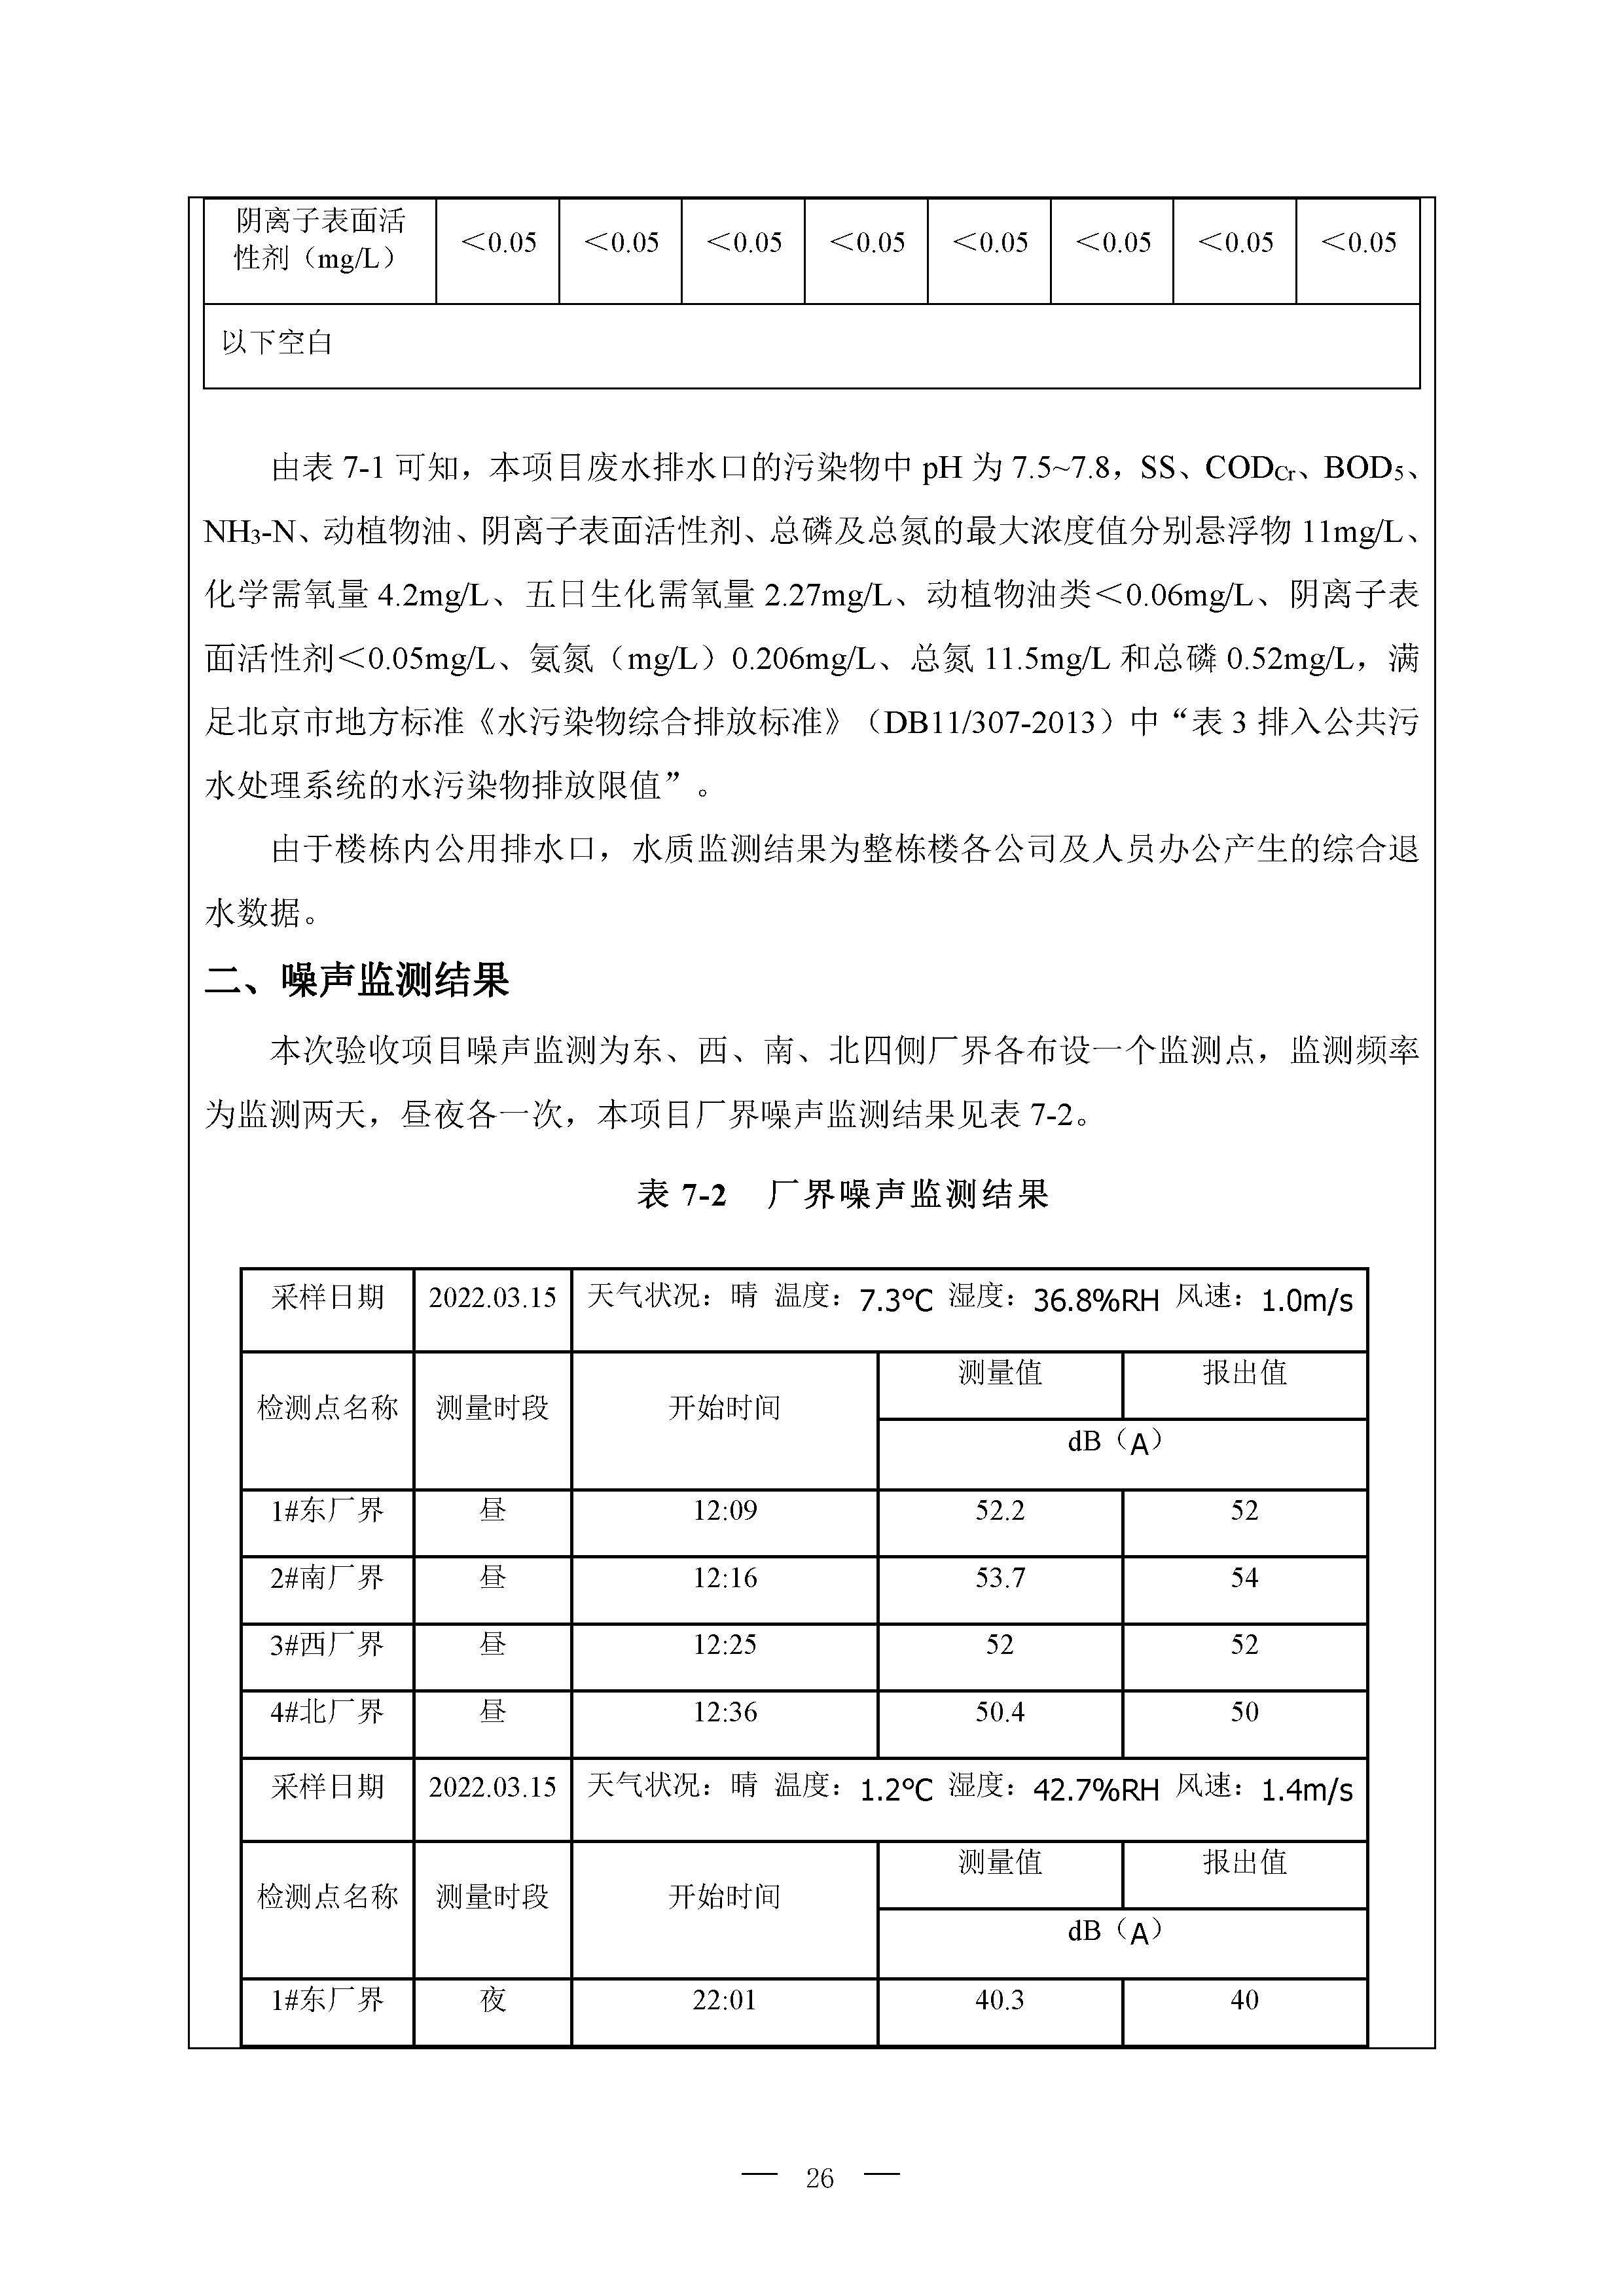 北京博瑞莱智能科技集团有限公司项目竣工环境保护验收监测报告全本公示(图30)